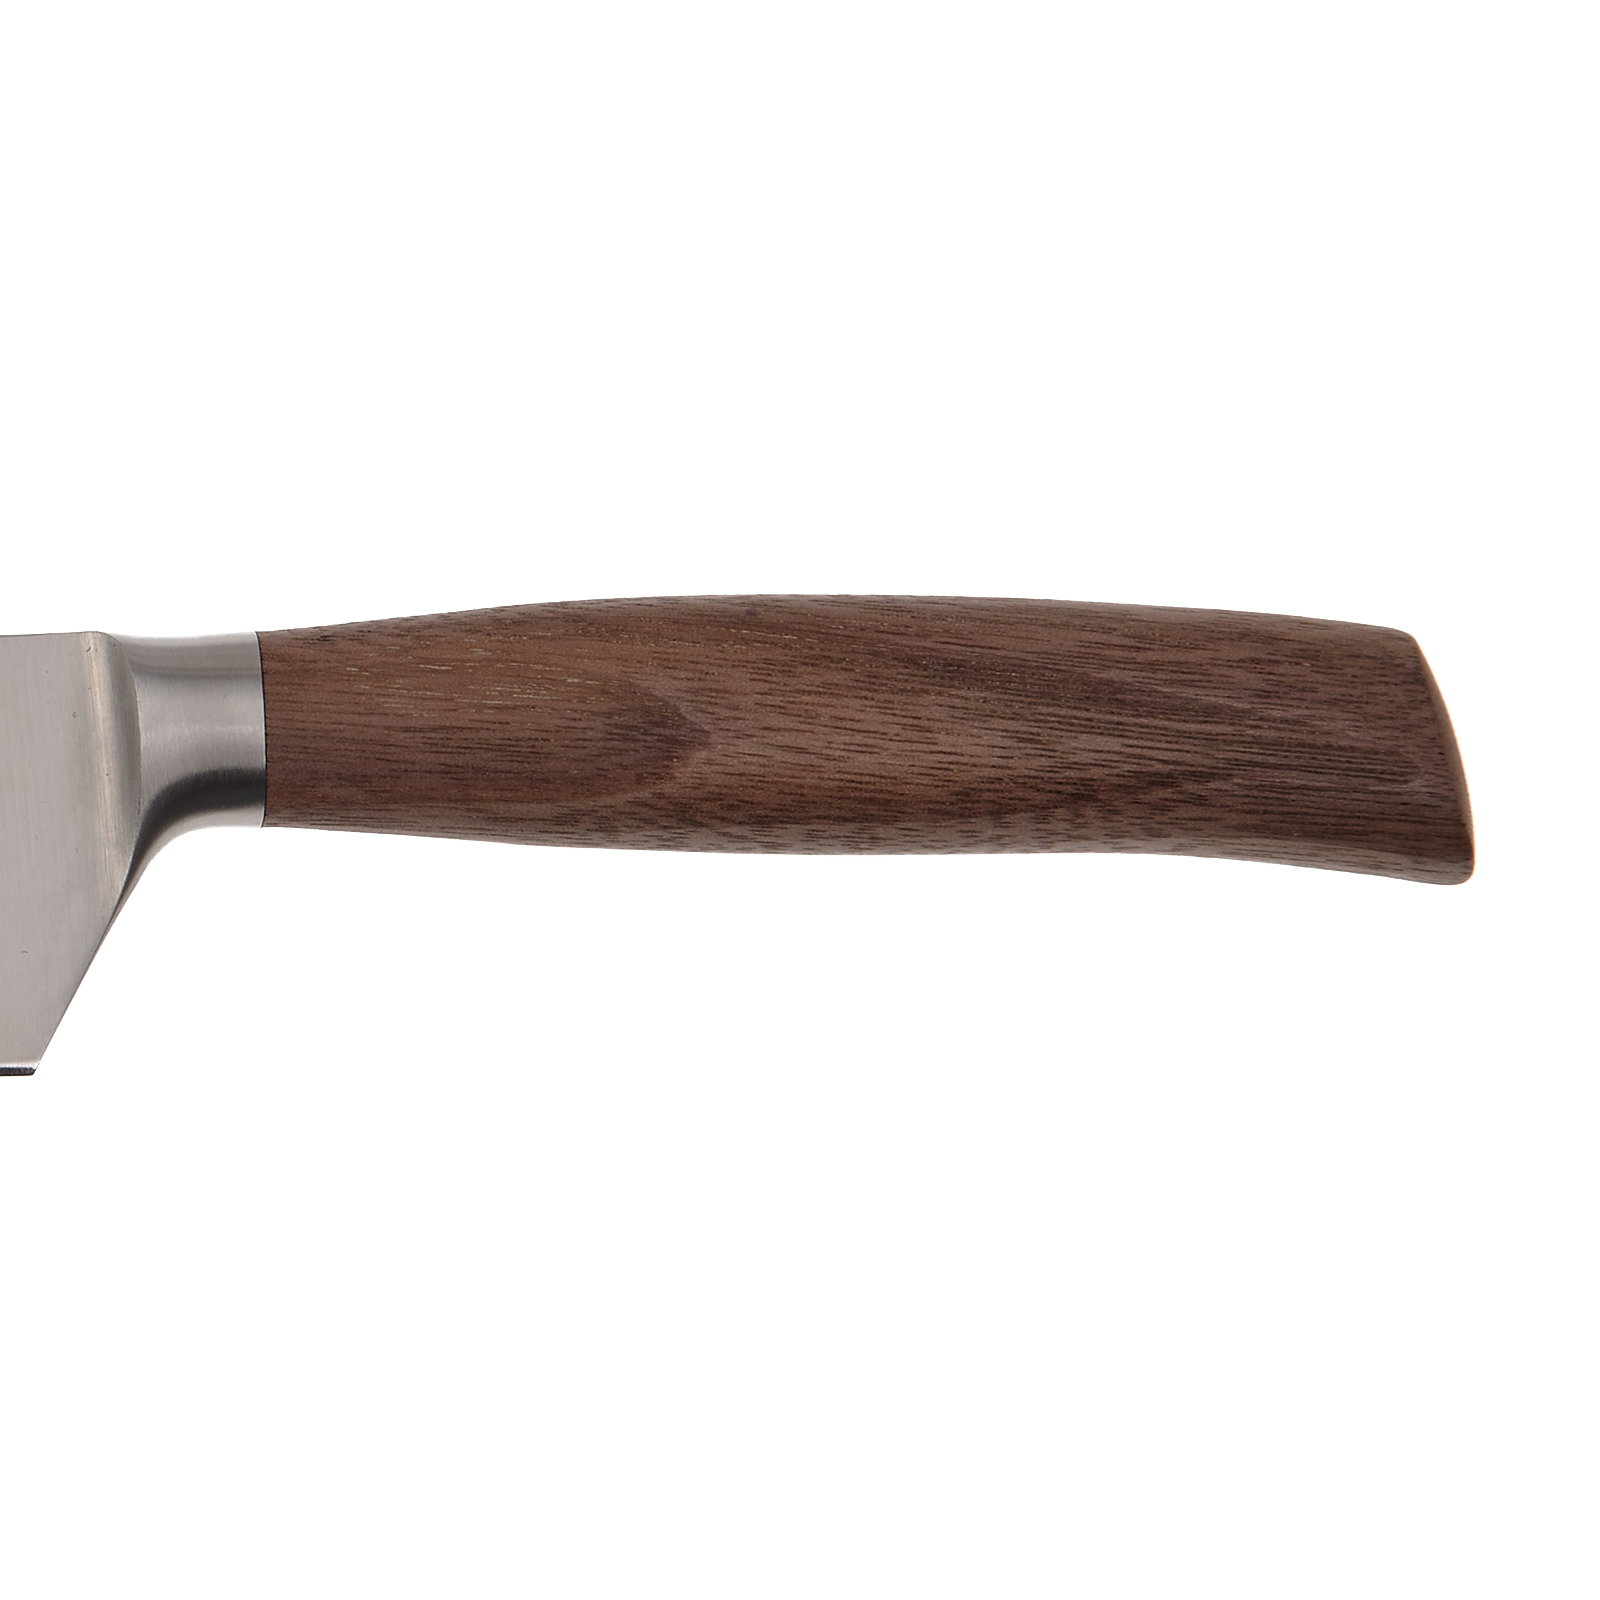 Neuer Messergriff Nussbaum | Solinger Qualitätsschliff